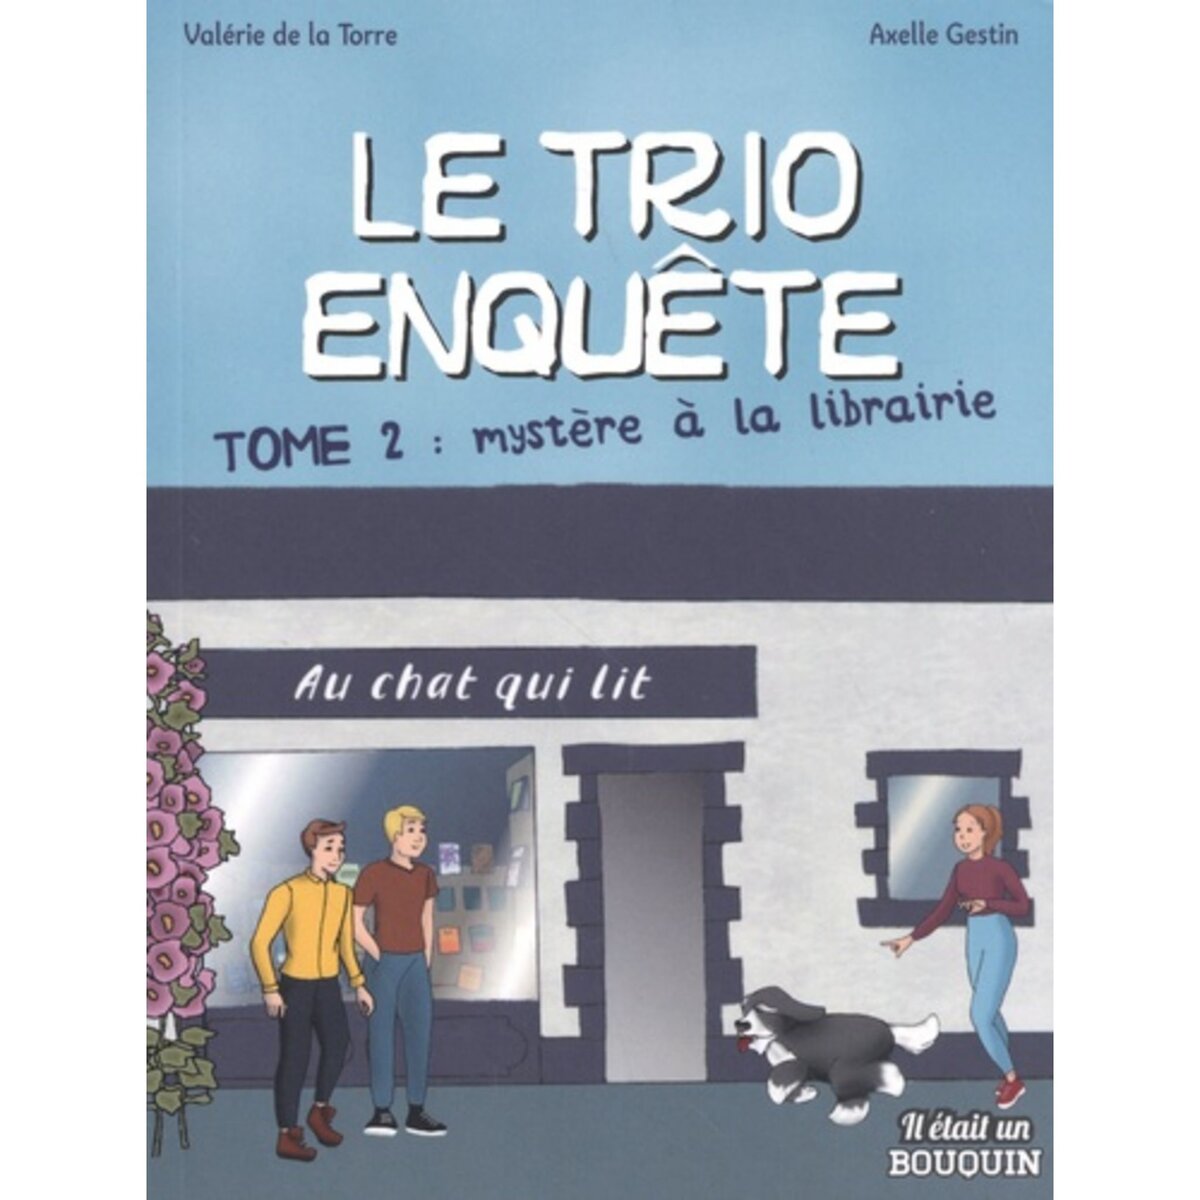  LE TRIO ENQUETE TOME 2 : MYSTERE A LA LIBRAIRIE [ADAPTE AUX DYS], La Torre Valérie de